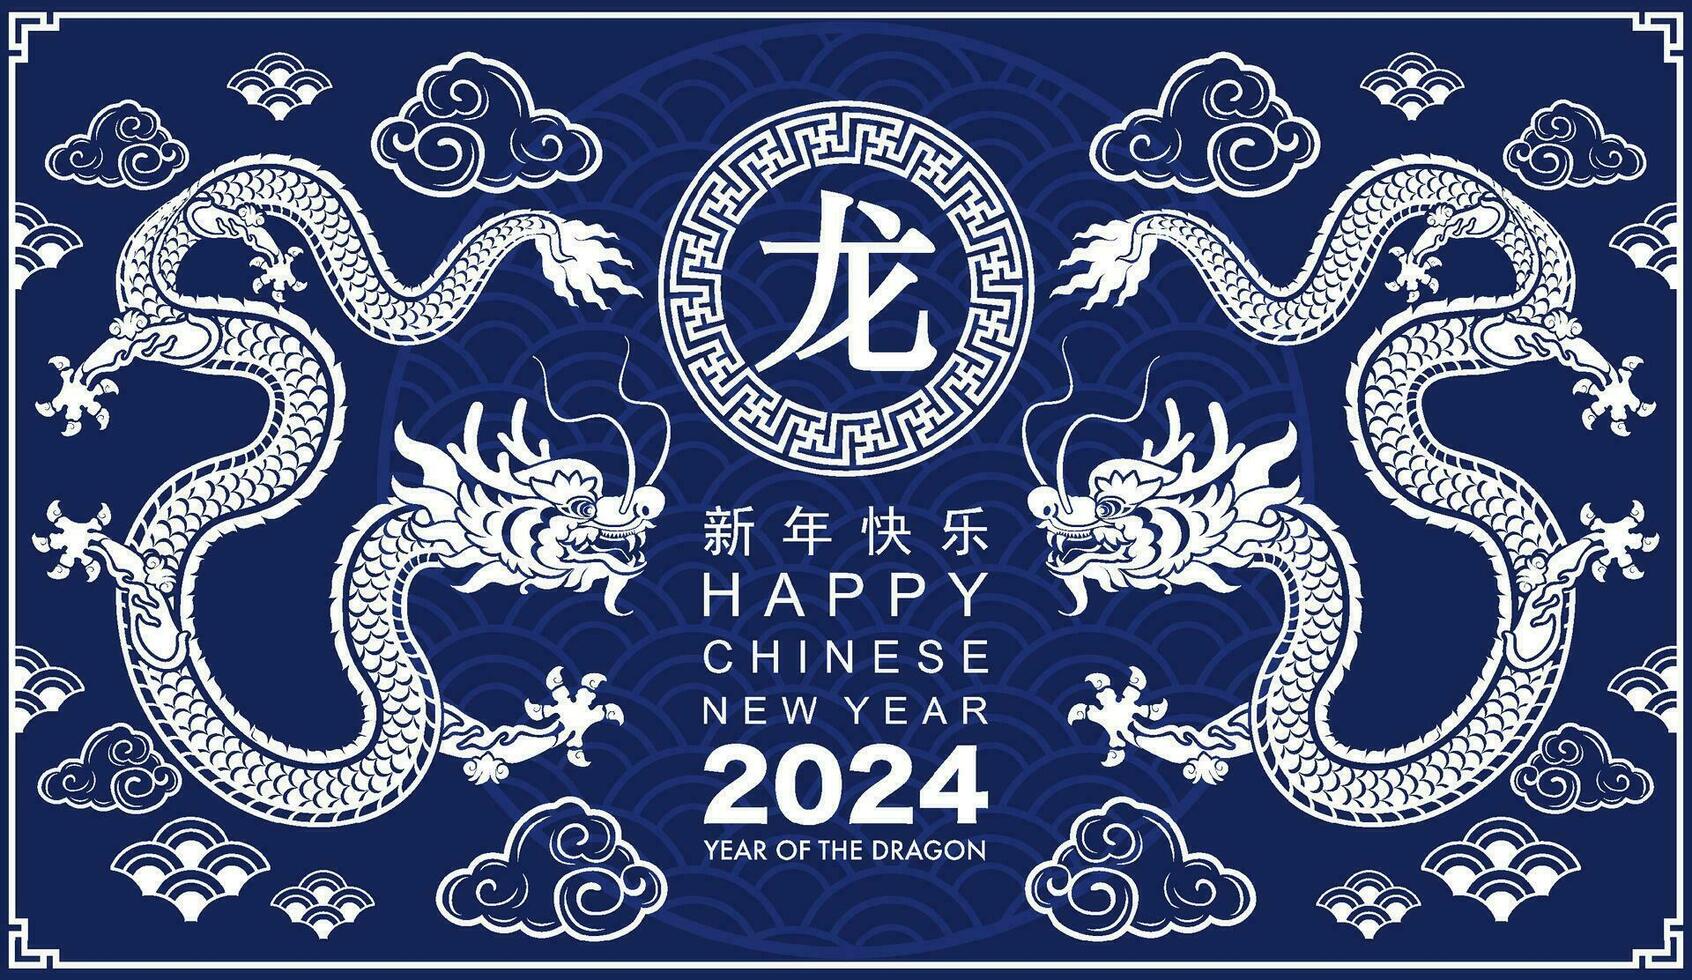 Lycklig kinesisk ny år 2024 de drake zodiaken tecken med blomma, lykta, asiatisk element vit och blå papper skära stil på Färg bakgrund. vektor